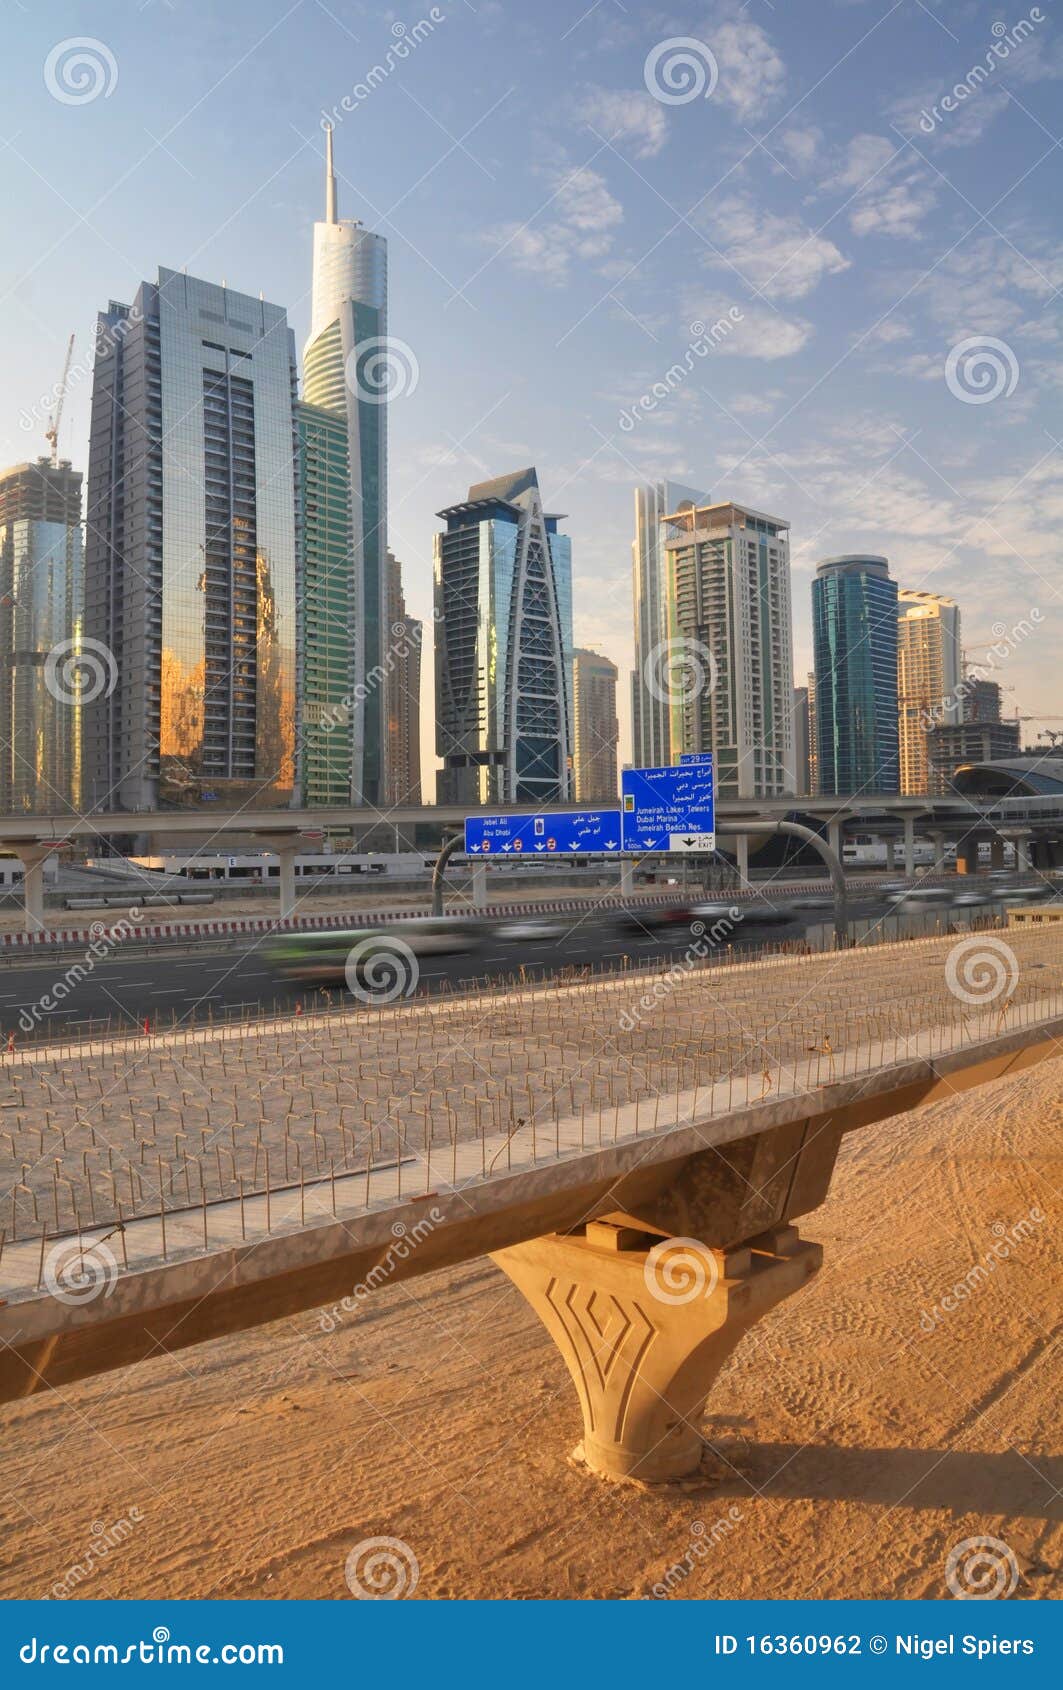 Abu dhabi Dubai droga. 2008 abu urozmaica Dubai osiem gdy próby być budowy trzaskiem tworzą pustynnego dhabi pieniężny przedpole autostrady centrum pasa ruchu połączenia robić wiele poprzegradzany projekta niepotrzebny turystyki handlarscy pracownicy